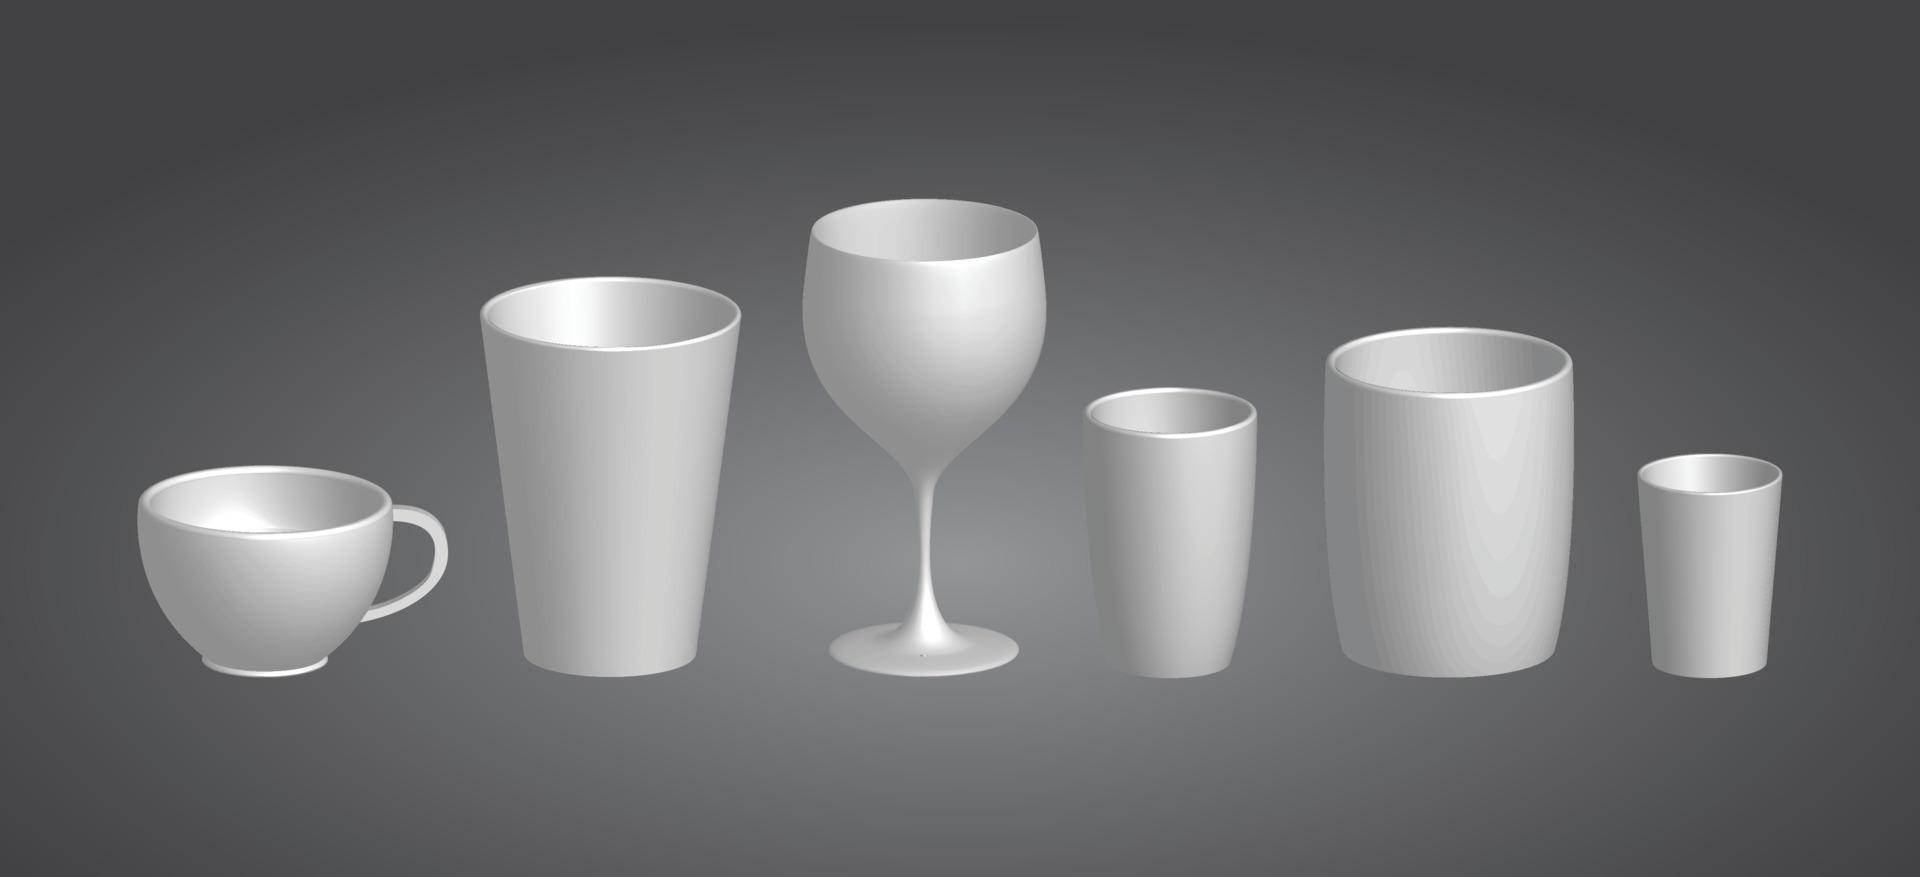 3D-glas element set samling mock up design vektorgrafik, dekorativa prydnadsobjekt vektor